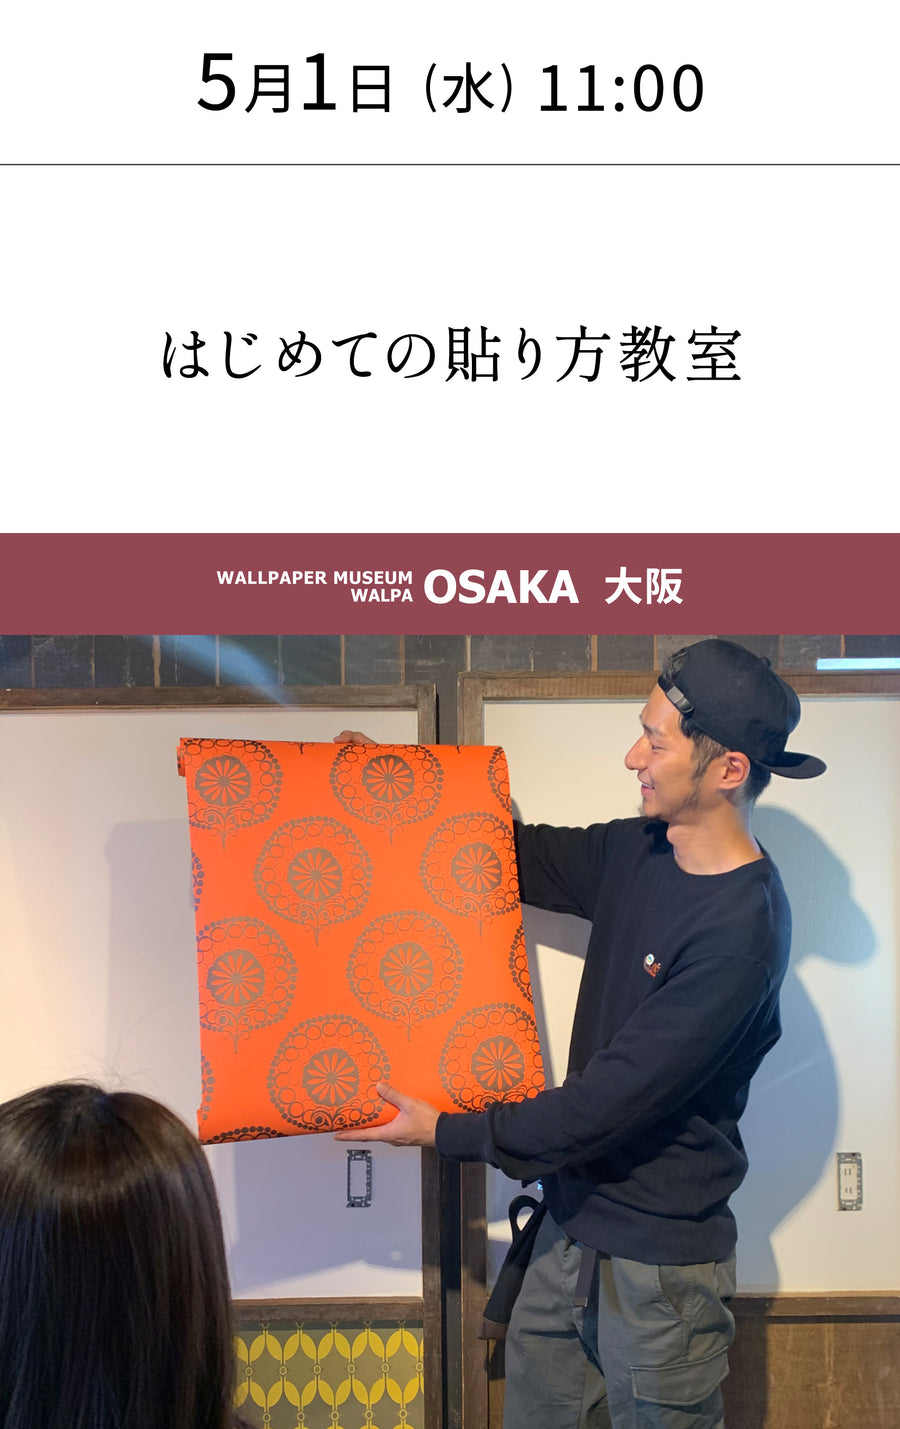 5月1日(水) 11:00～WALLPAPER MUSEUM WALPA / OSAKA ワークショップ 「はじめての貼り方教室」